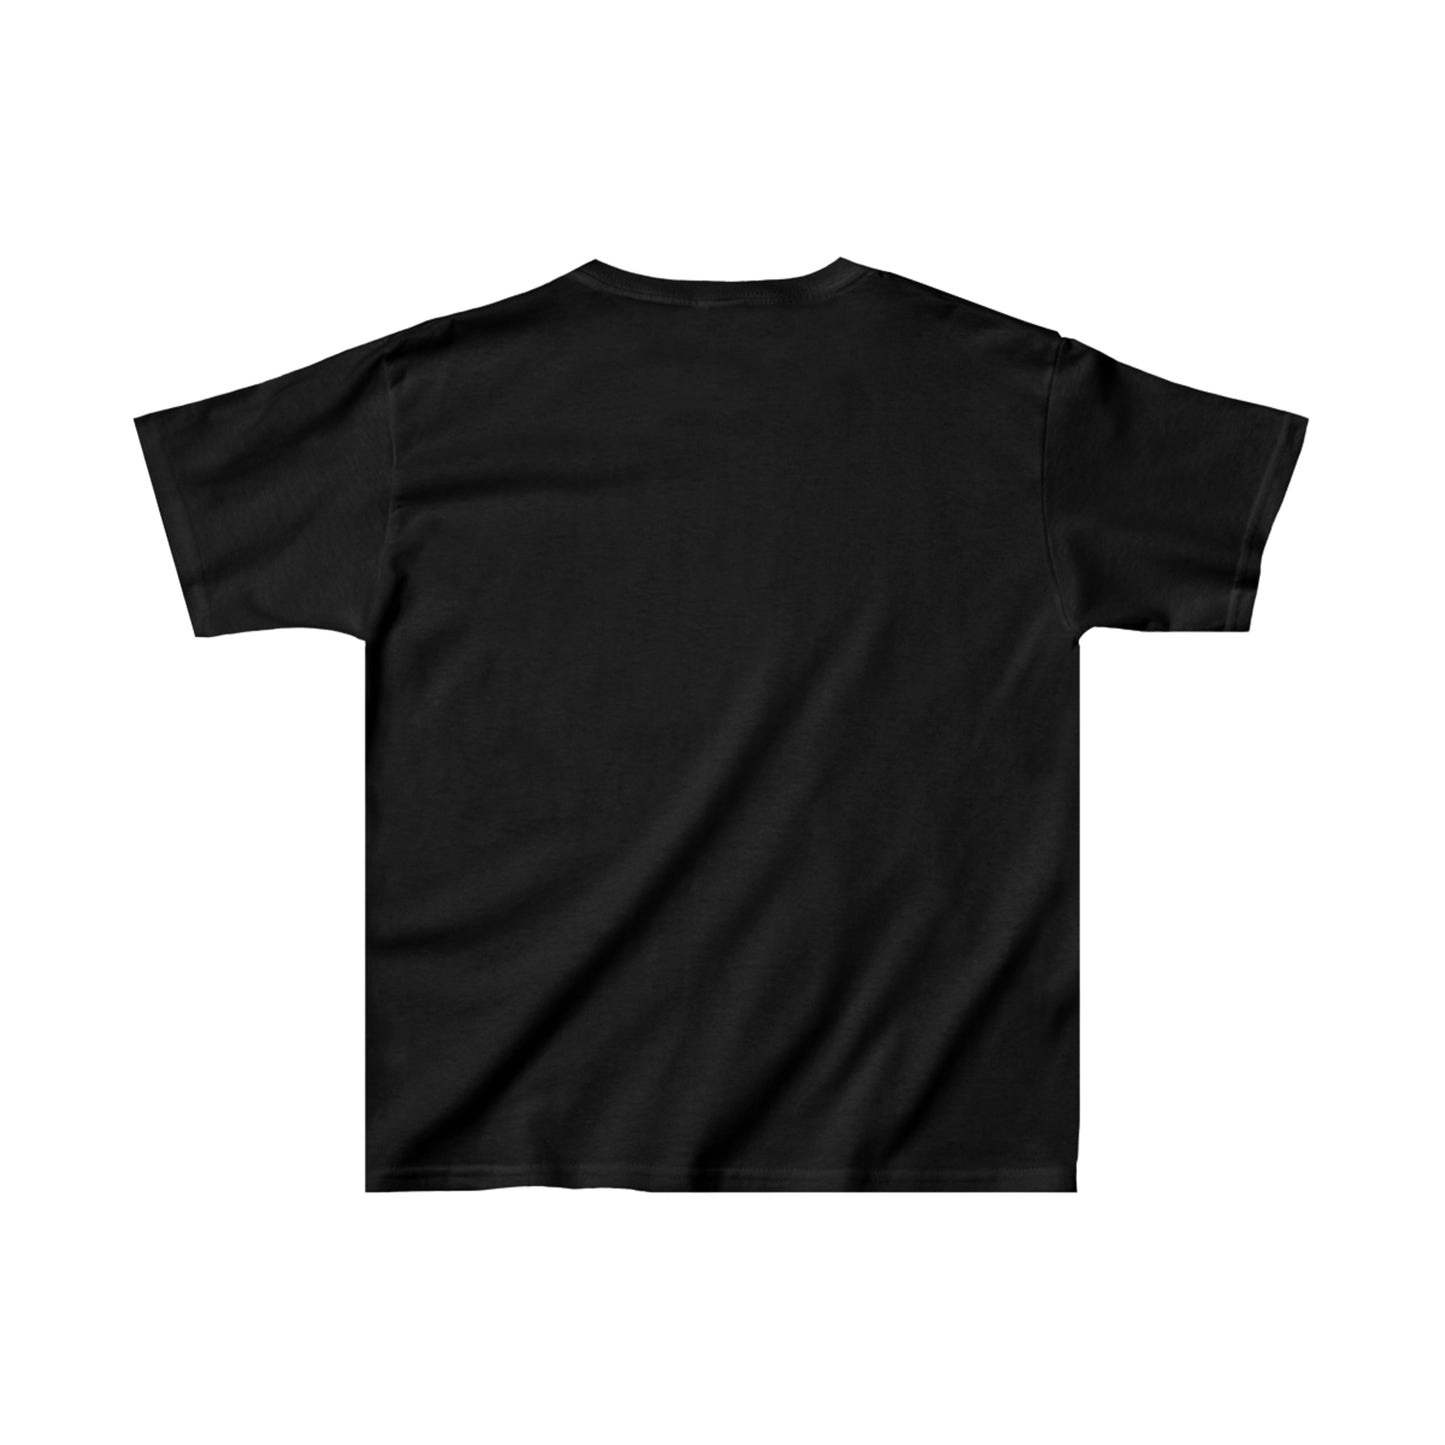 T-shirt à manches courtes à imprimé unisexe straw-bear-ries pour enfant